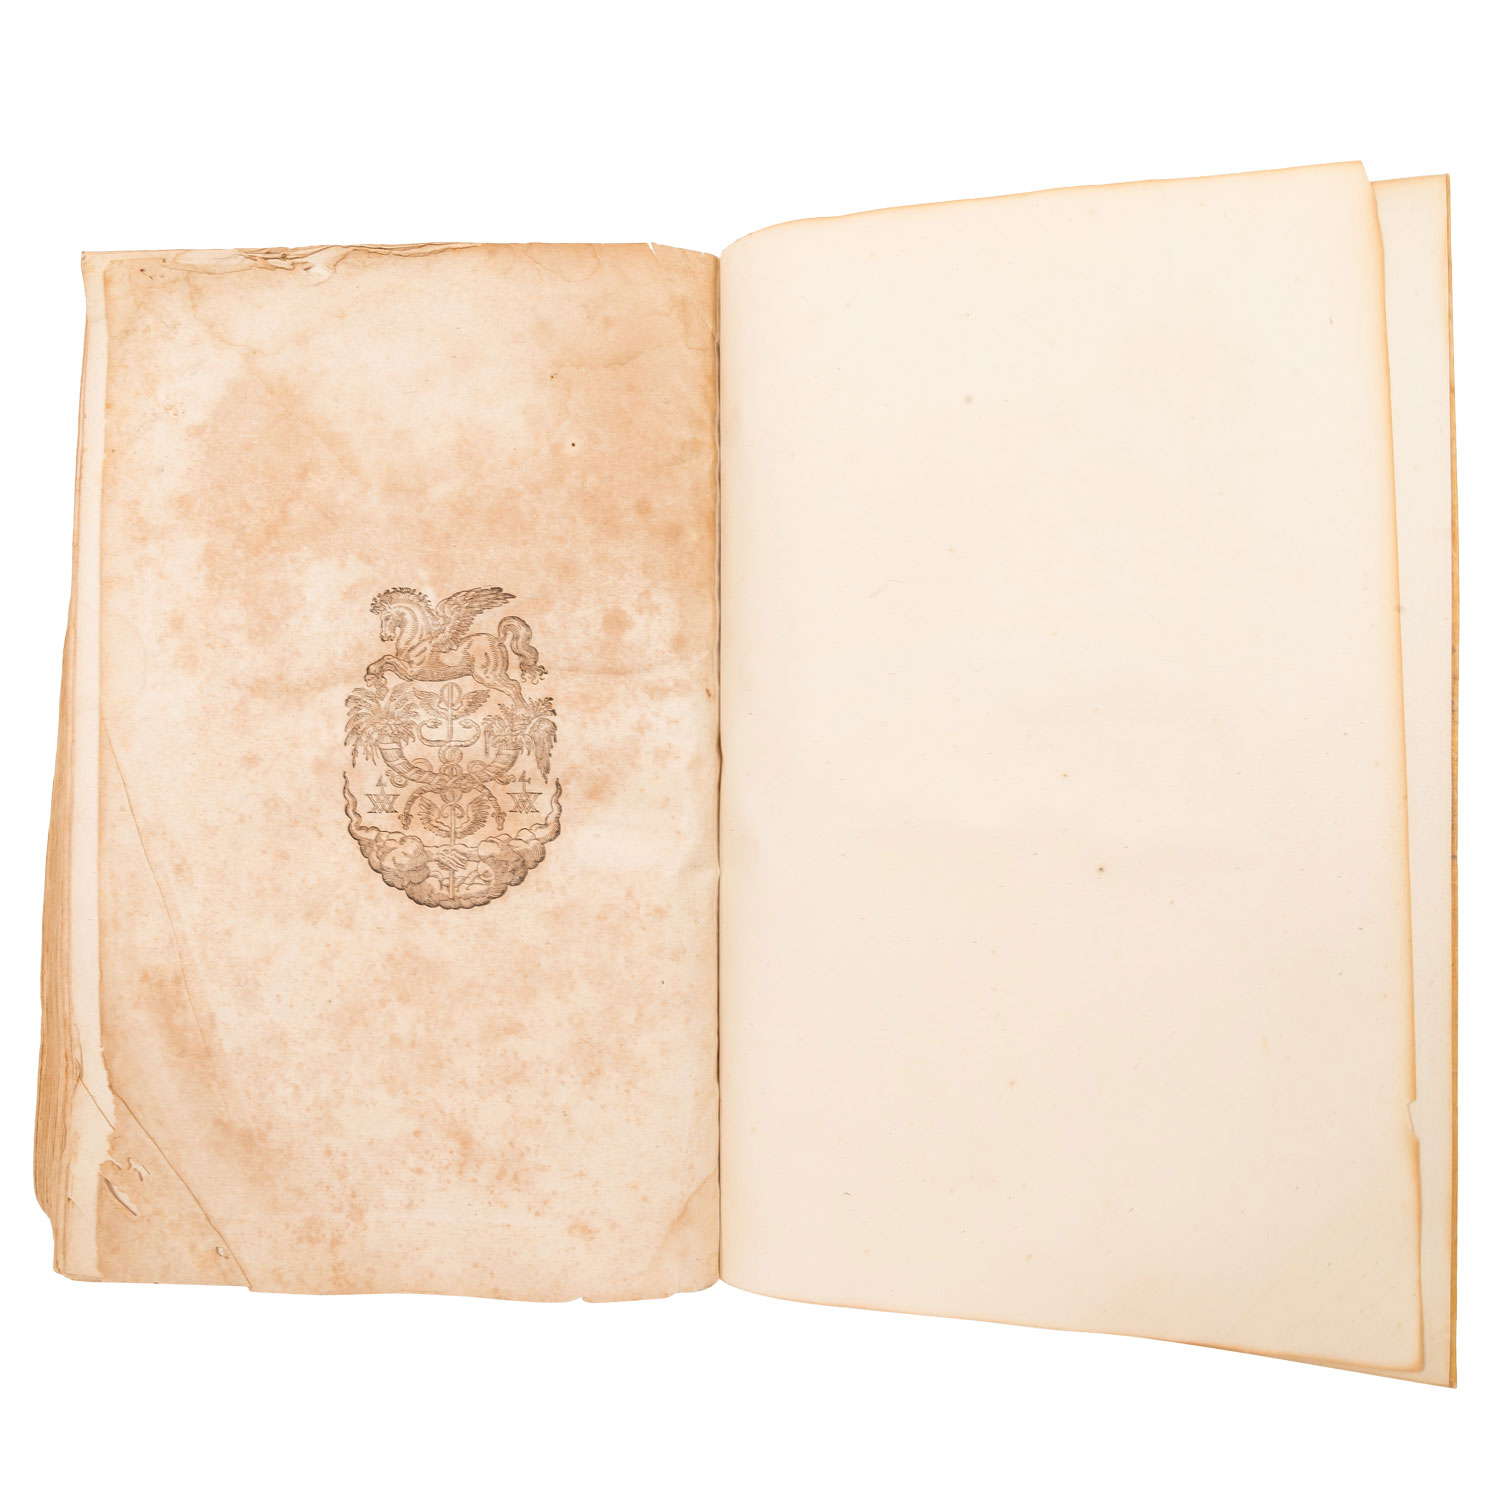 ORAZIO AUGENIO "De ratione curandi per sanguinis missionem libri decem" 1598 - Image 6 of 6